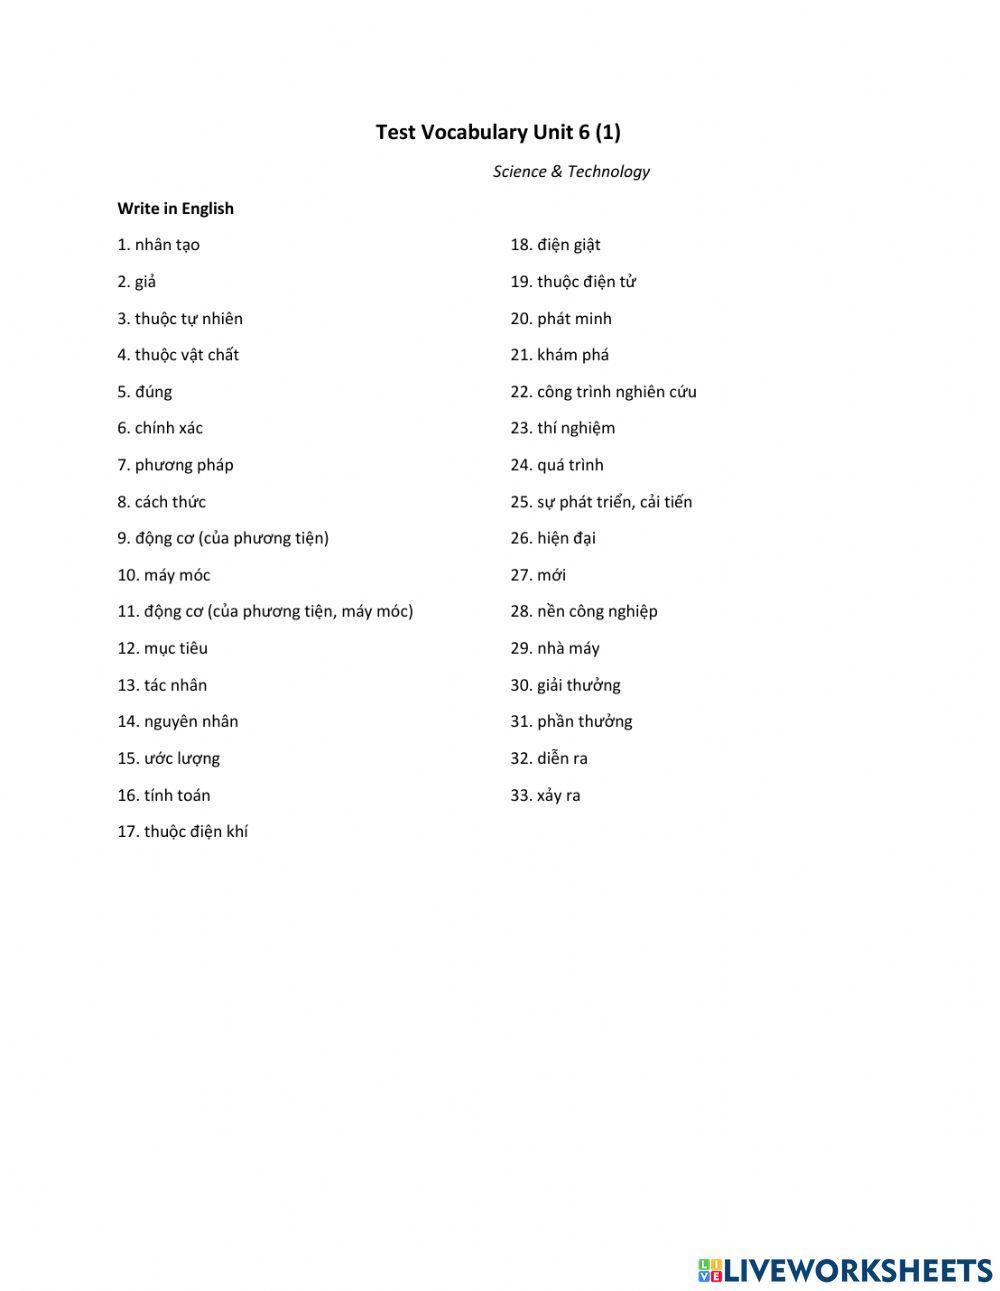 Test Vocabulary U6 (1)